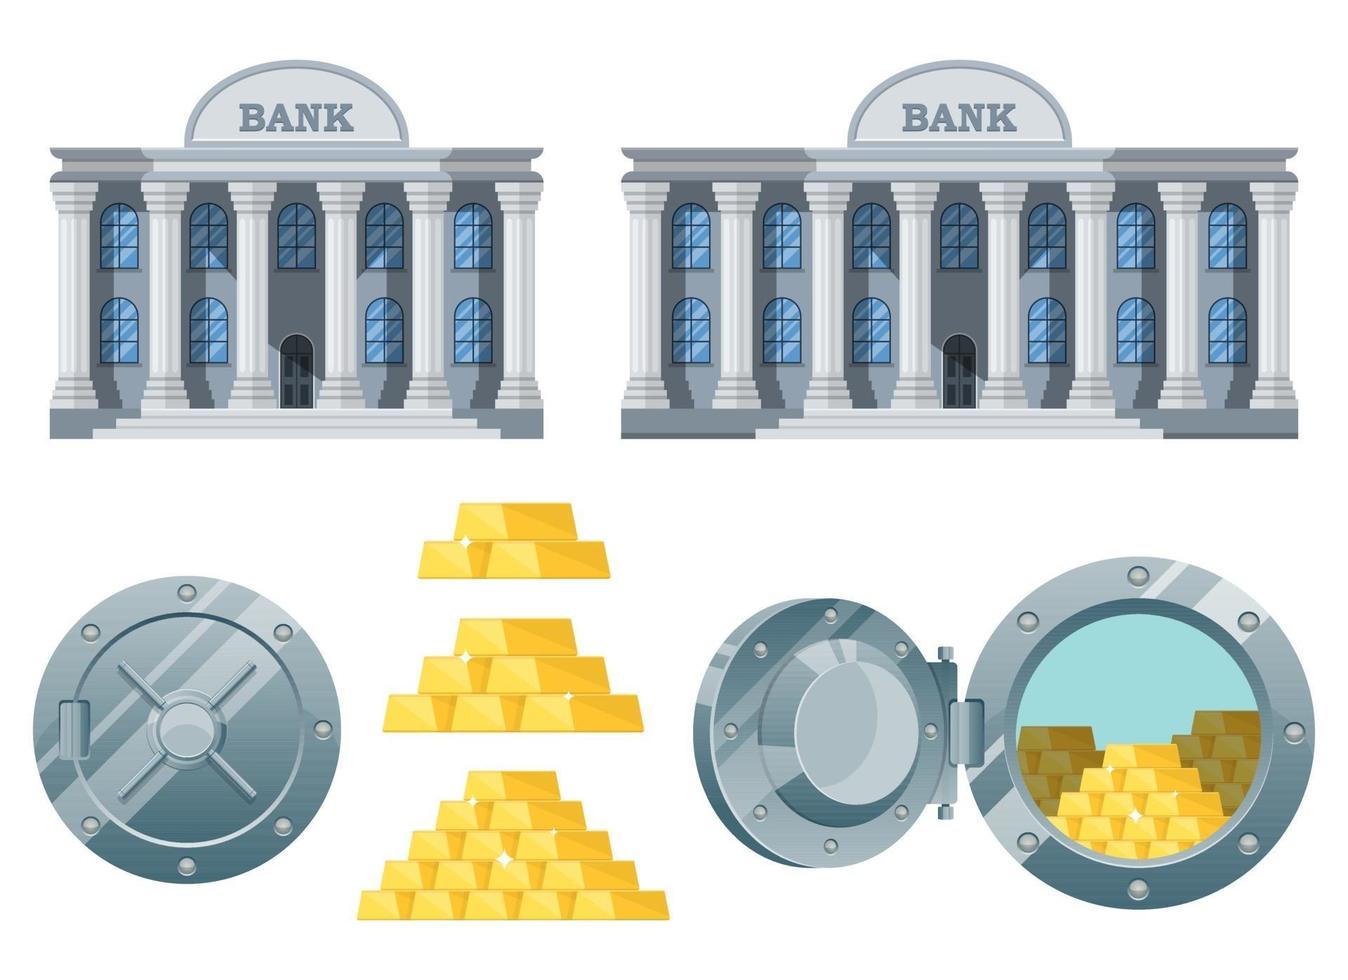 Stylish bank building vector design illustration set isolated on white background